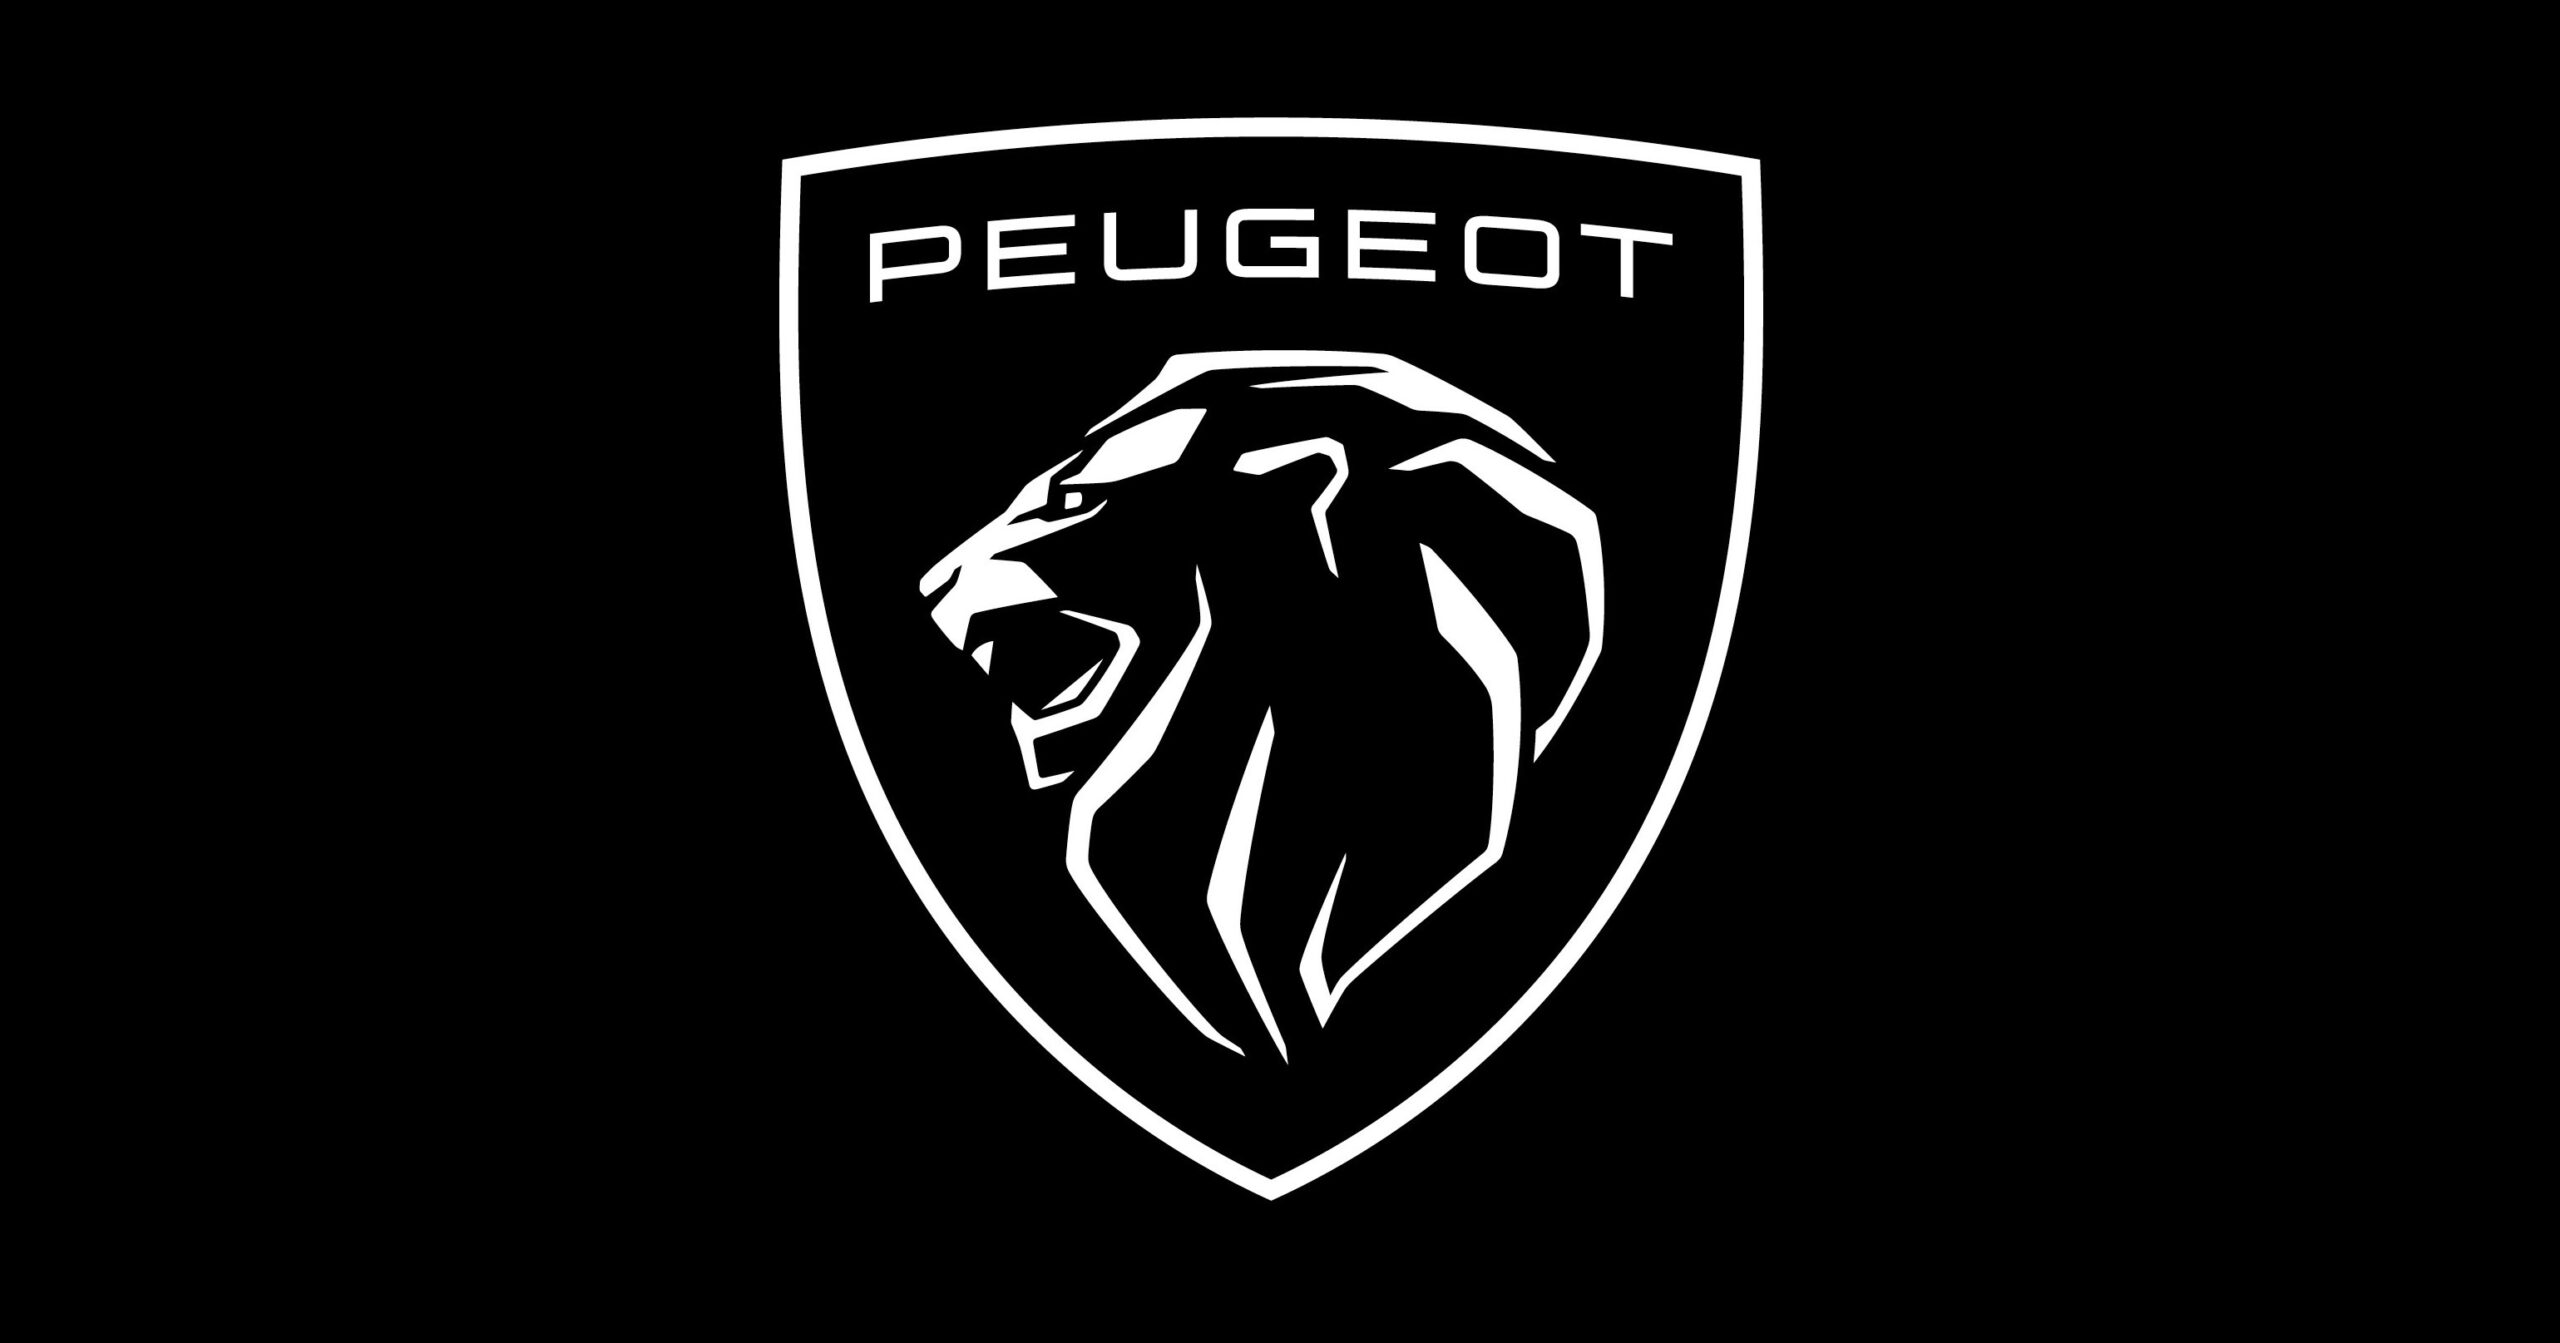 L’histoire du logo de Peugeot (1810)